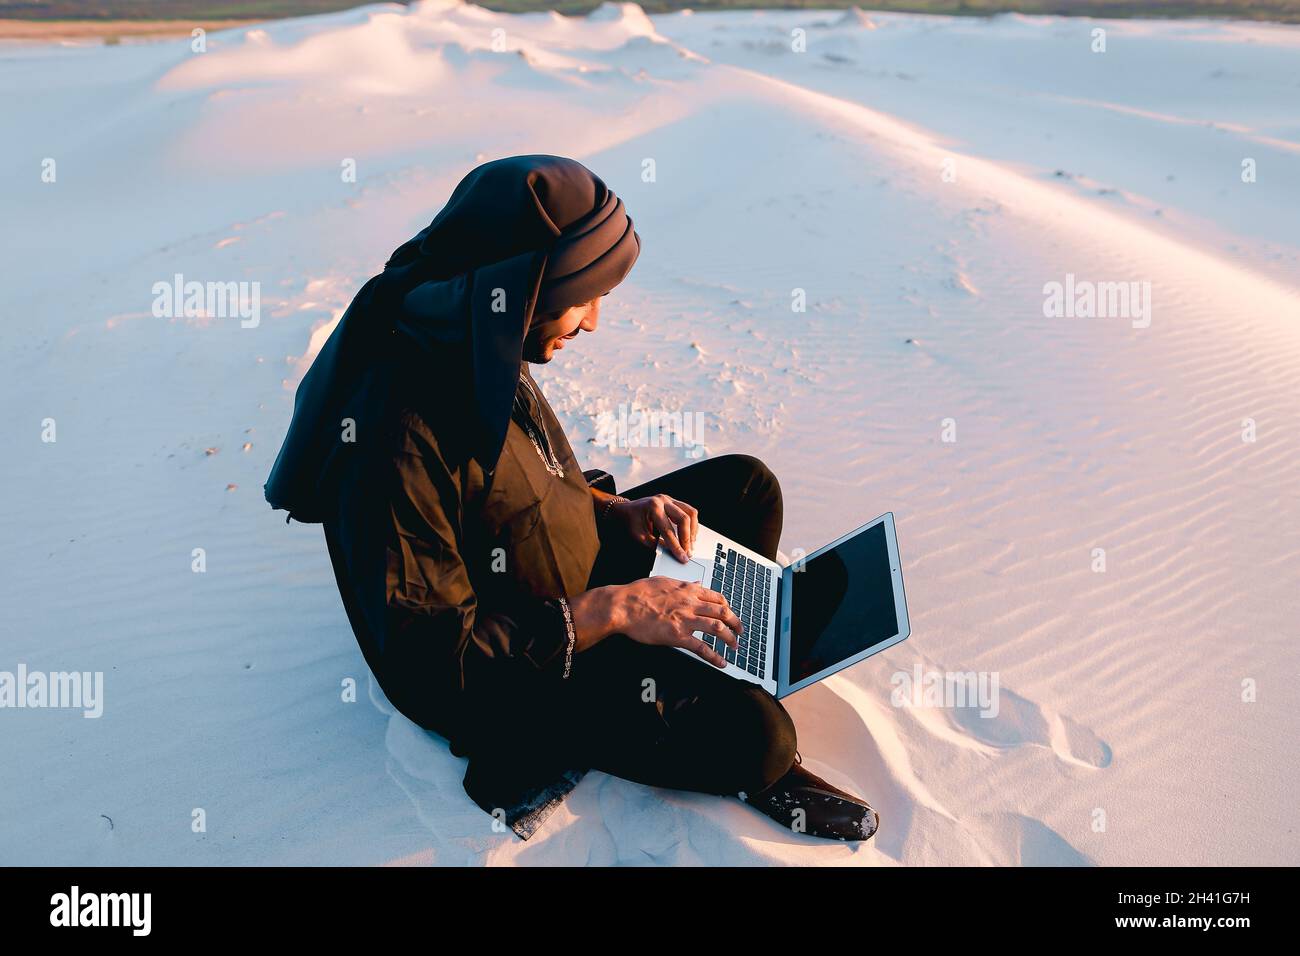 Der gebildete arabische Student verwendet einen Laptop und arbeitet am warmen Sommerabend auf Sand inmitten von Sanddünen der Wüste. Stockfoto